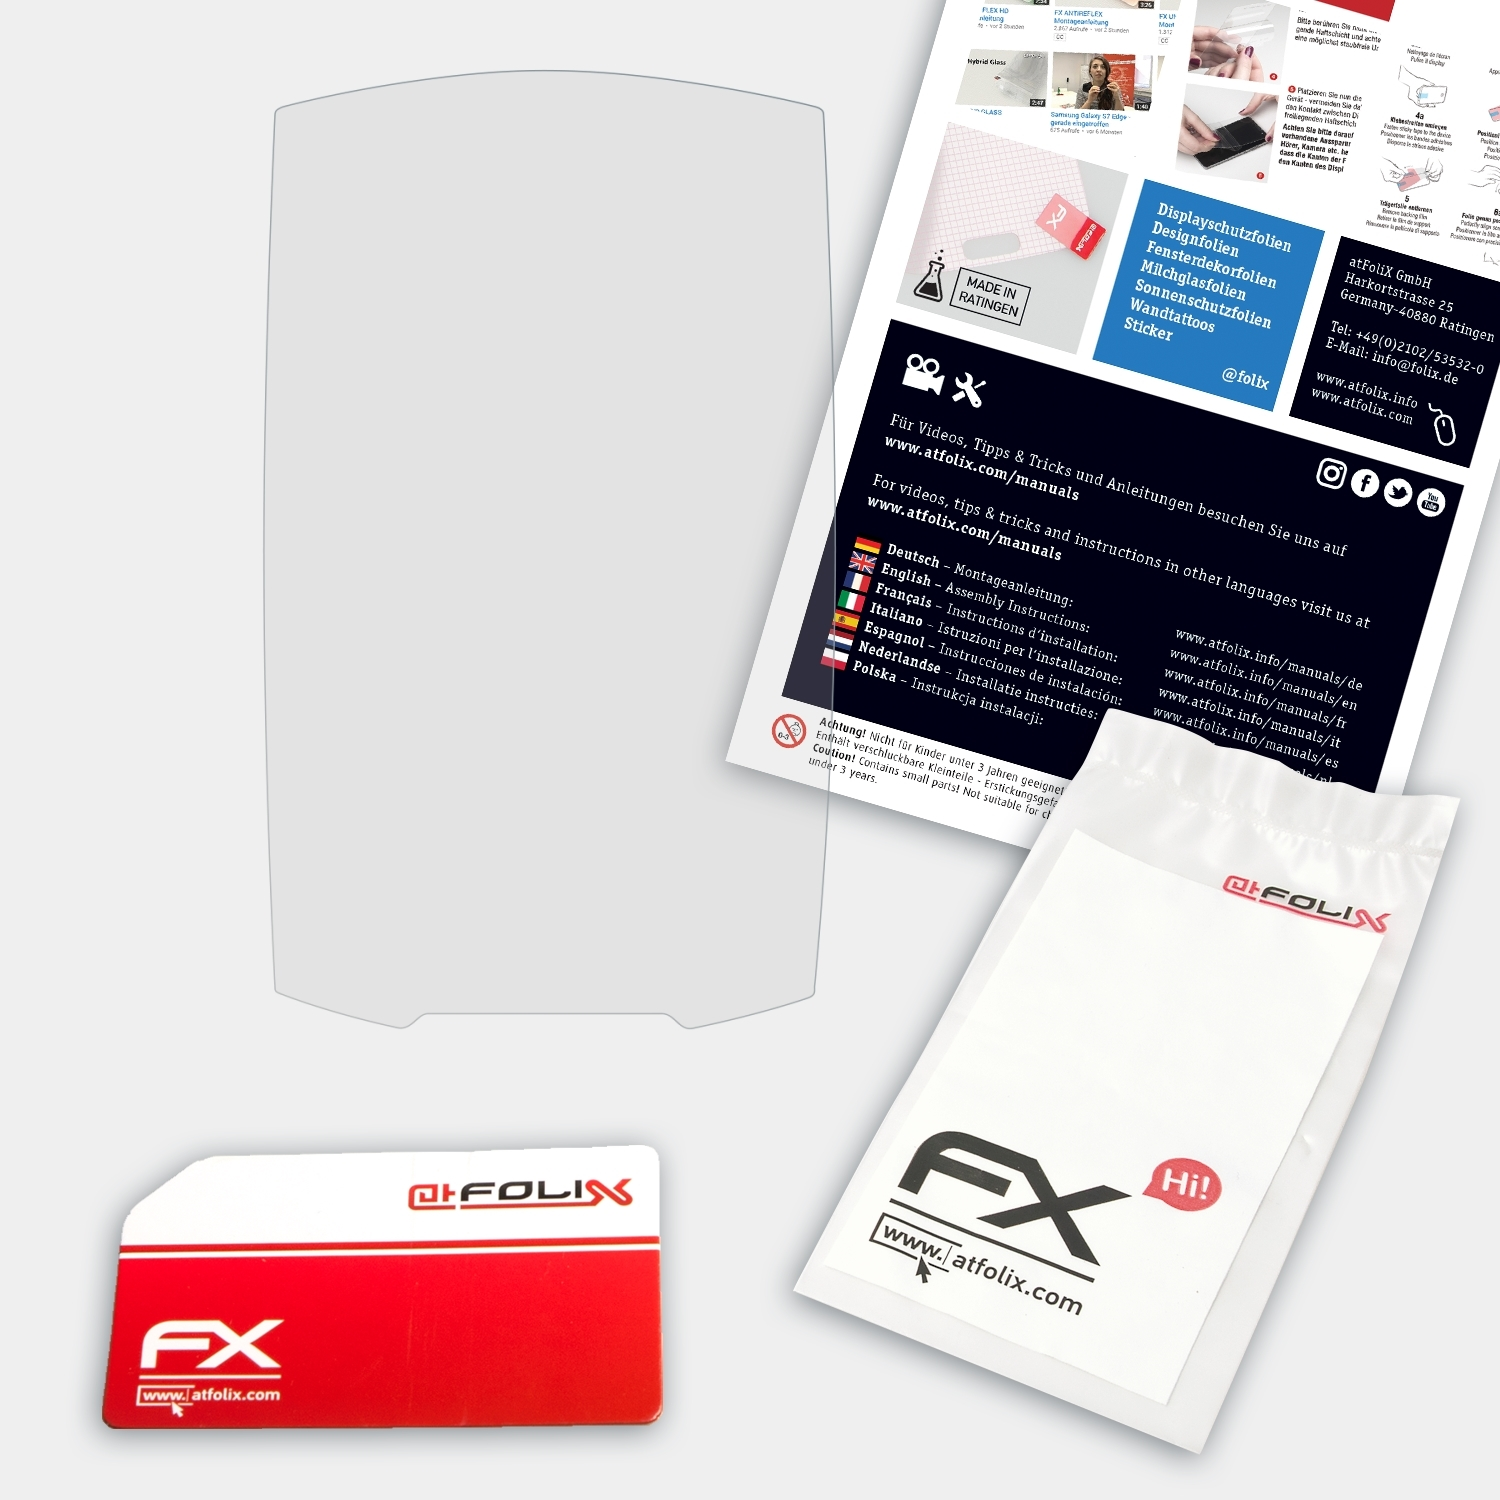 ATFOLIX FX-Hybrid-Glass GPSMap Schutzglas(für 62st) Garmin